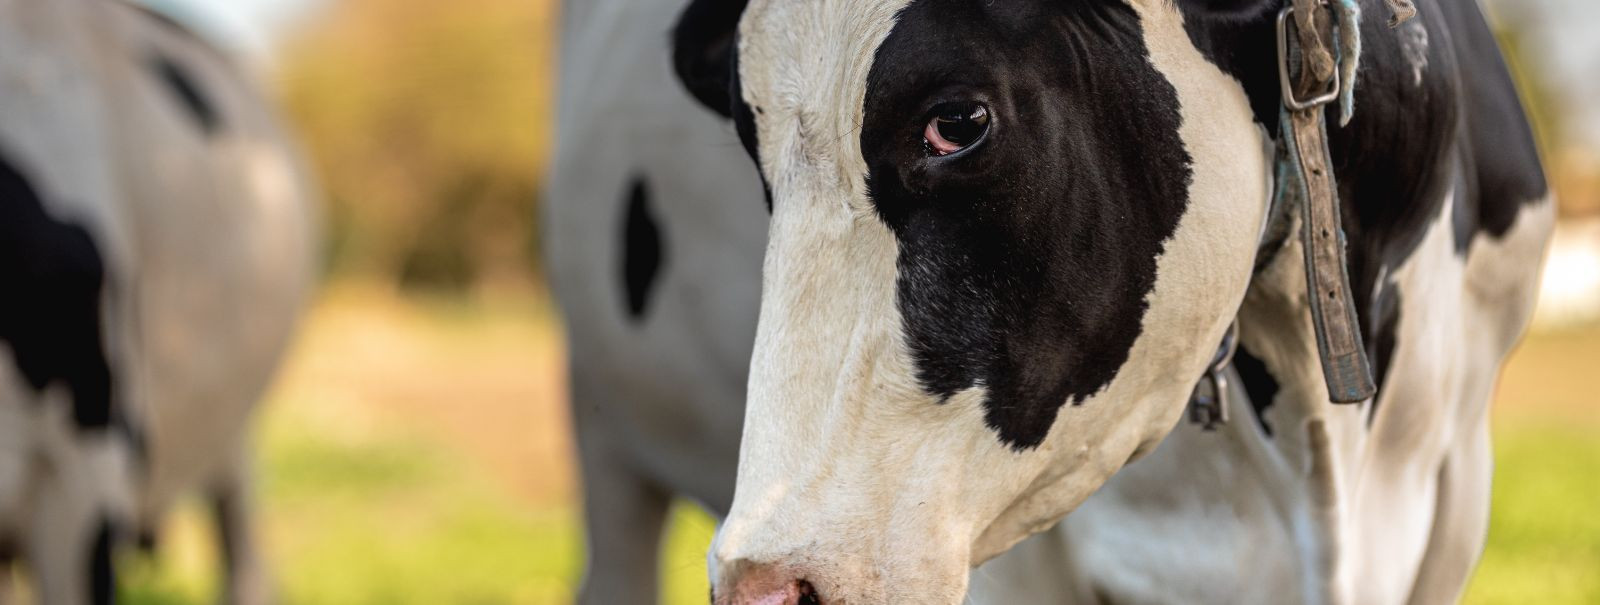 Piimatootjate eesmärk on selge: maksimeerida piimatoodangut ilma ...